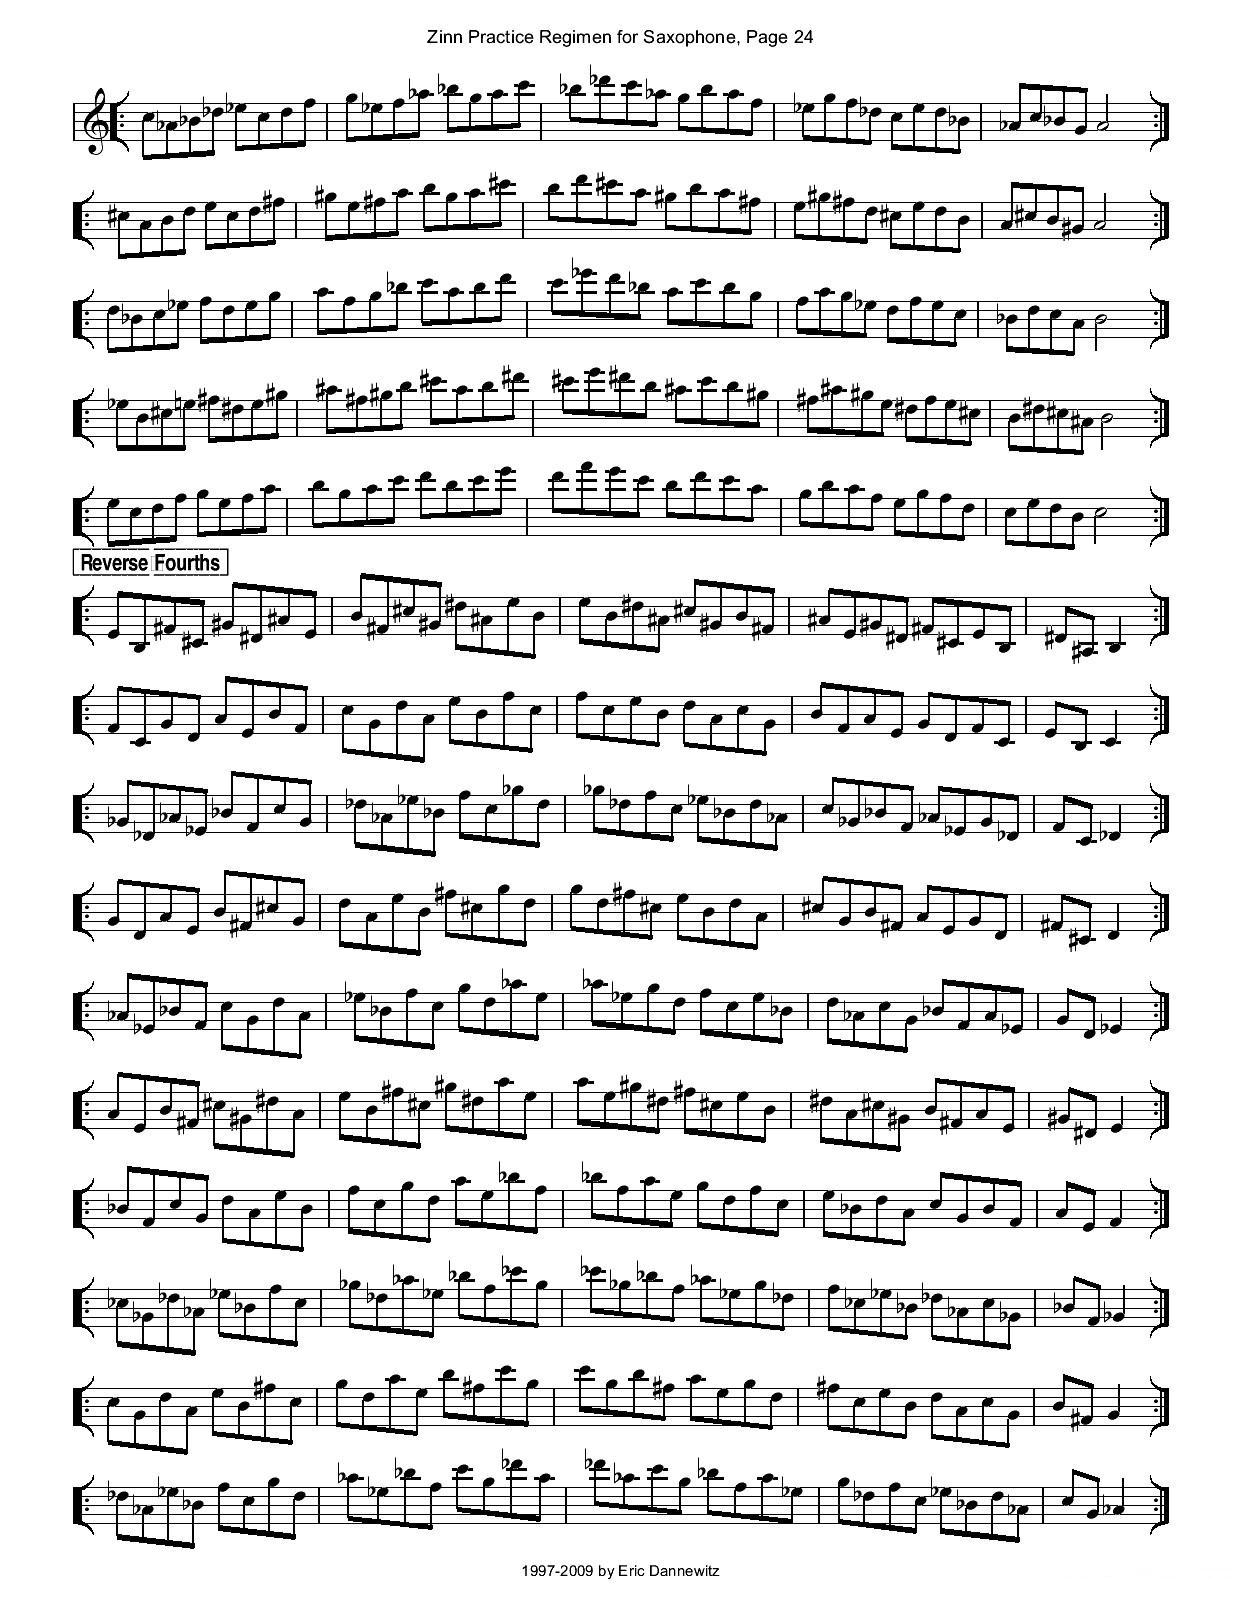 ZinnRegimenSax2009练习曲萨克斯曲谱（图27）